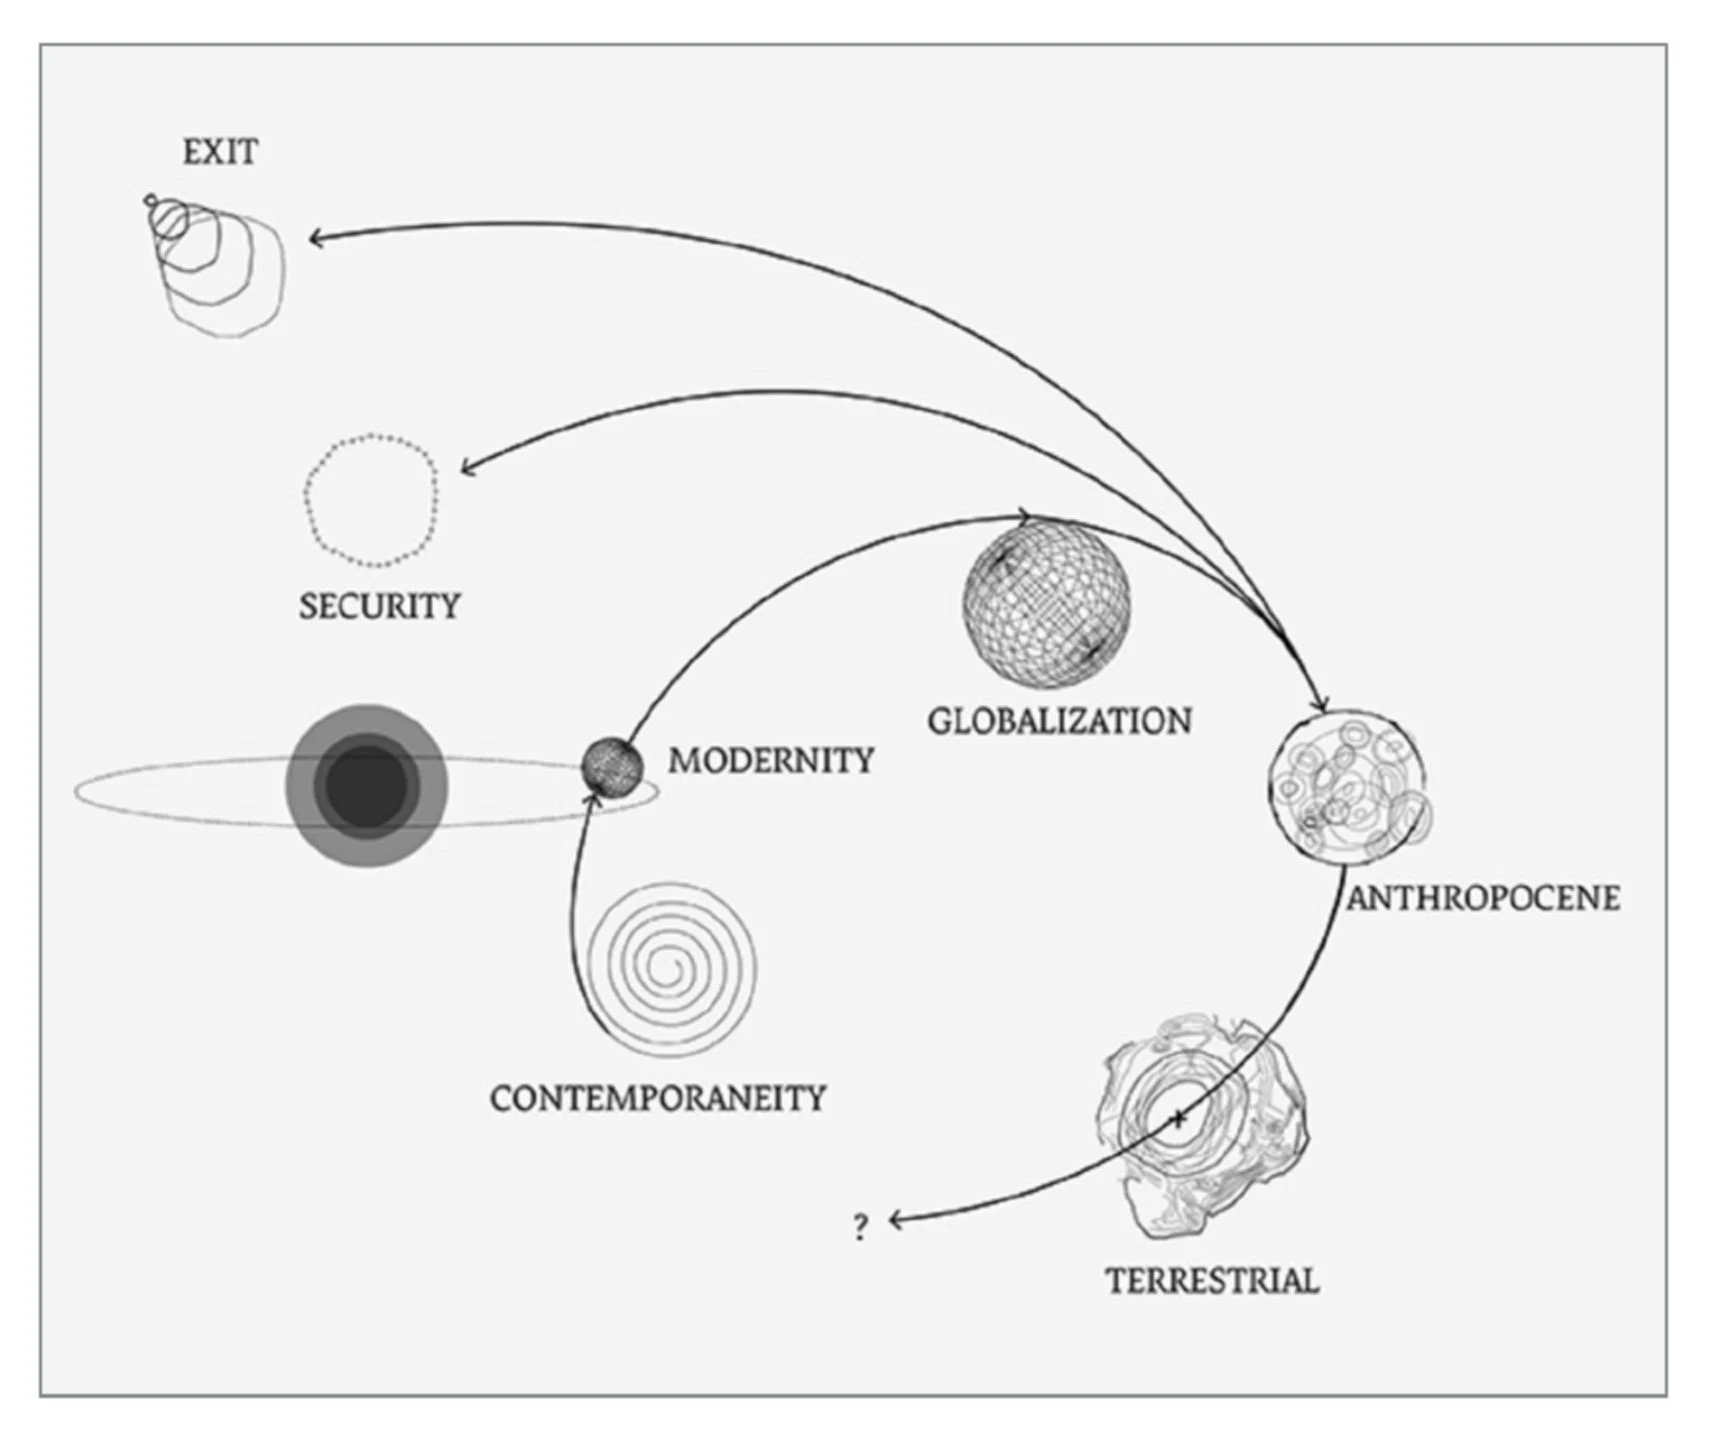 2018年拉圖在哈佛演講後，與雅漢娜共同修整、製作的星球論述模型圖。此圖擷取自拉圖2019年的文章〈我們似乎不住在同一星球上：一個虛構的天體模型圖〉（-圖片